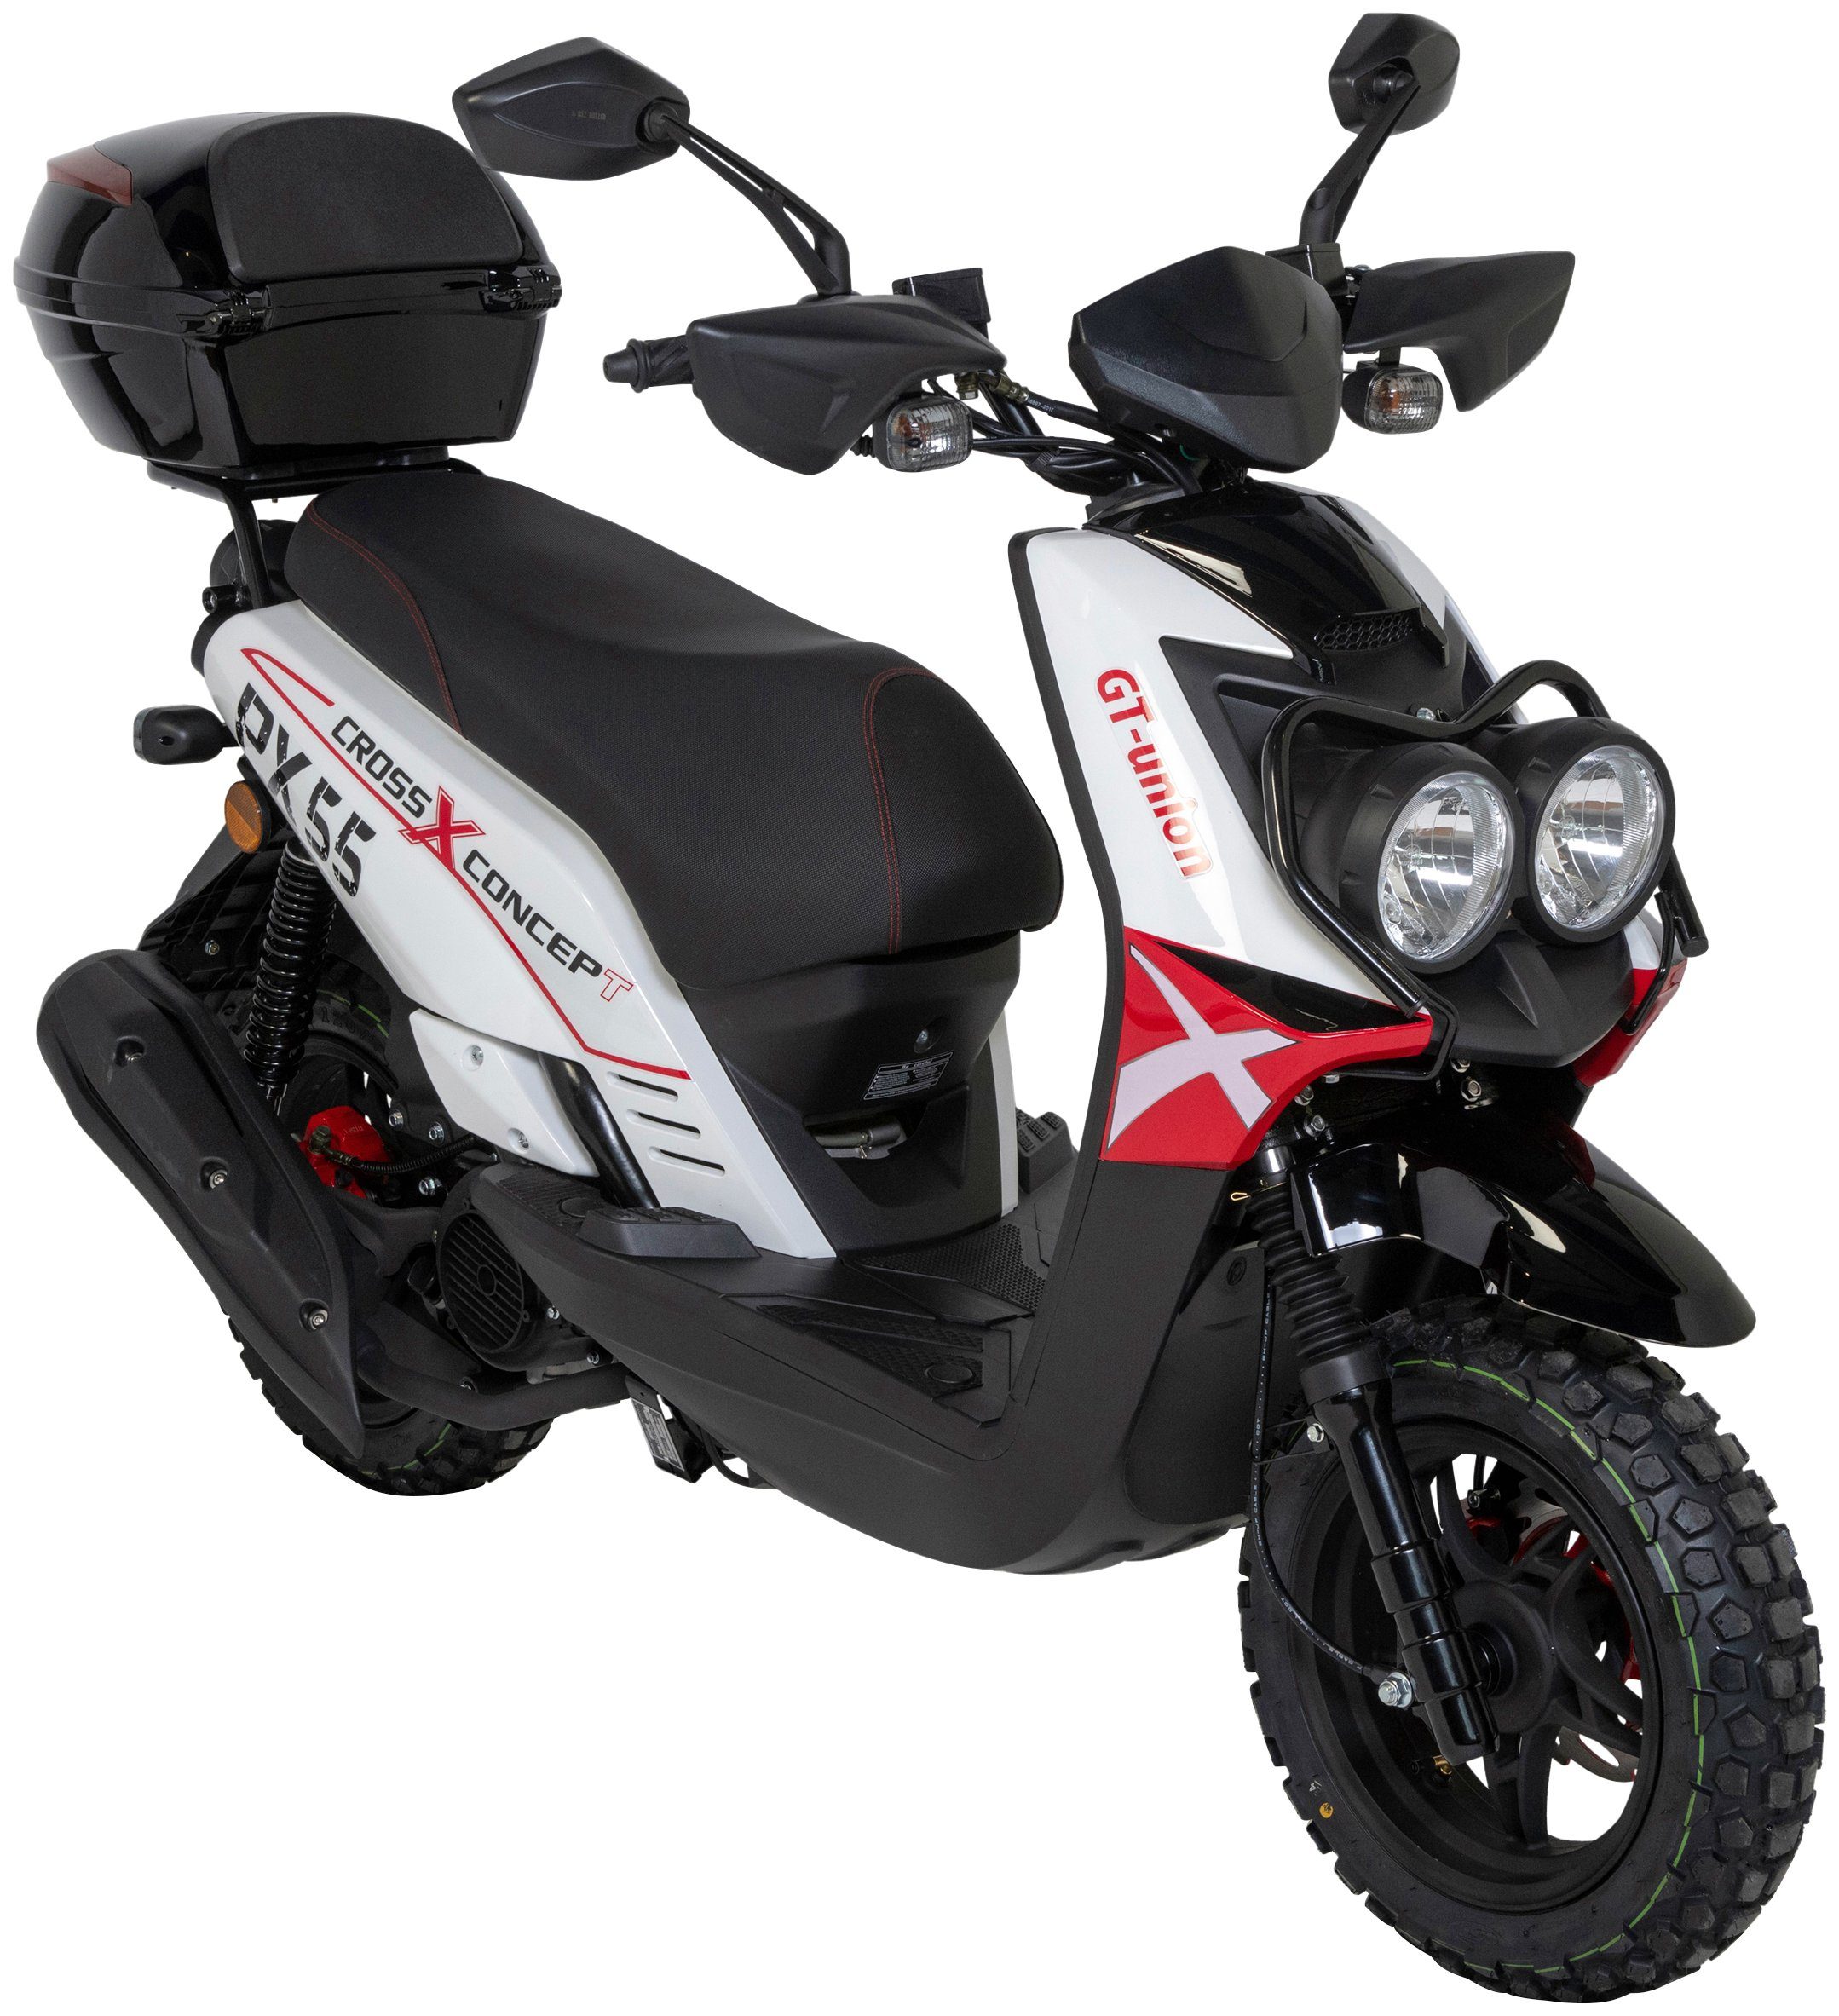 GT UNION Motorroller Topcase 50 Cross-Concept, Euro 45 km/h, 5, PX 55 (Set), mit ccm, weiß/rot/schwarz